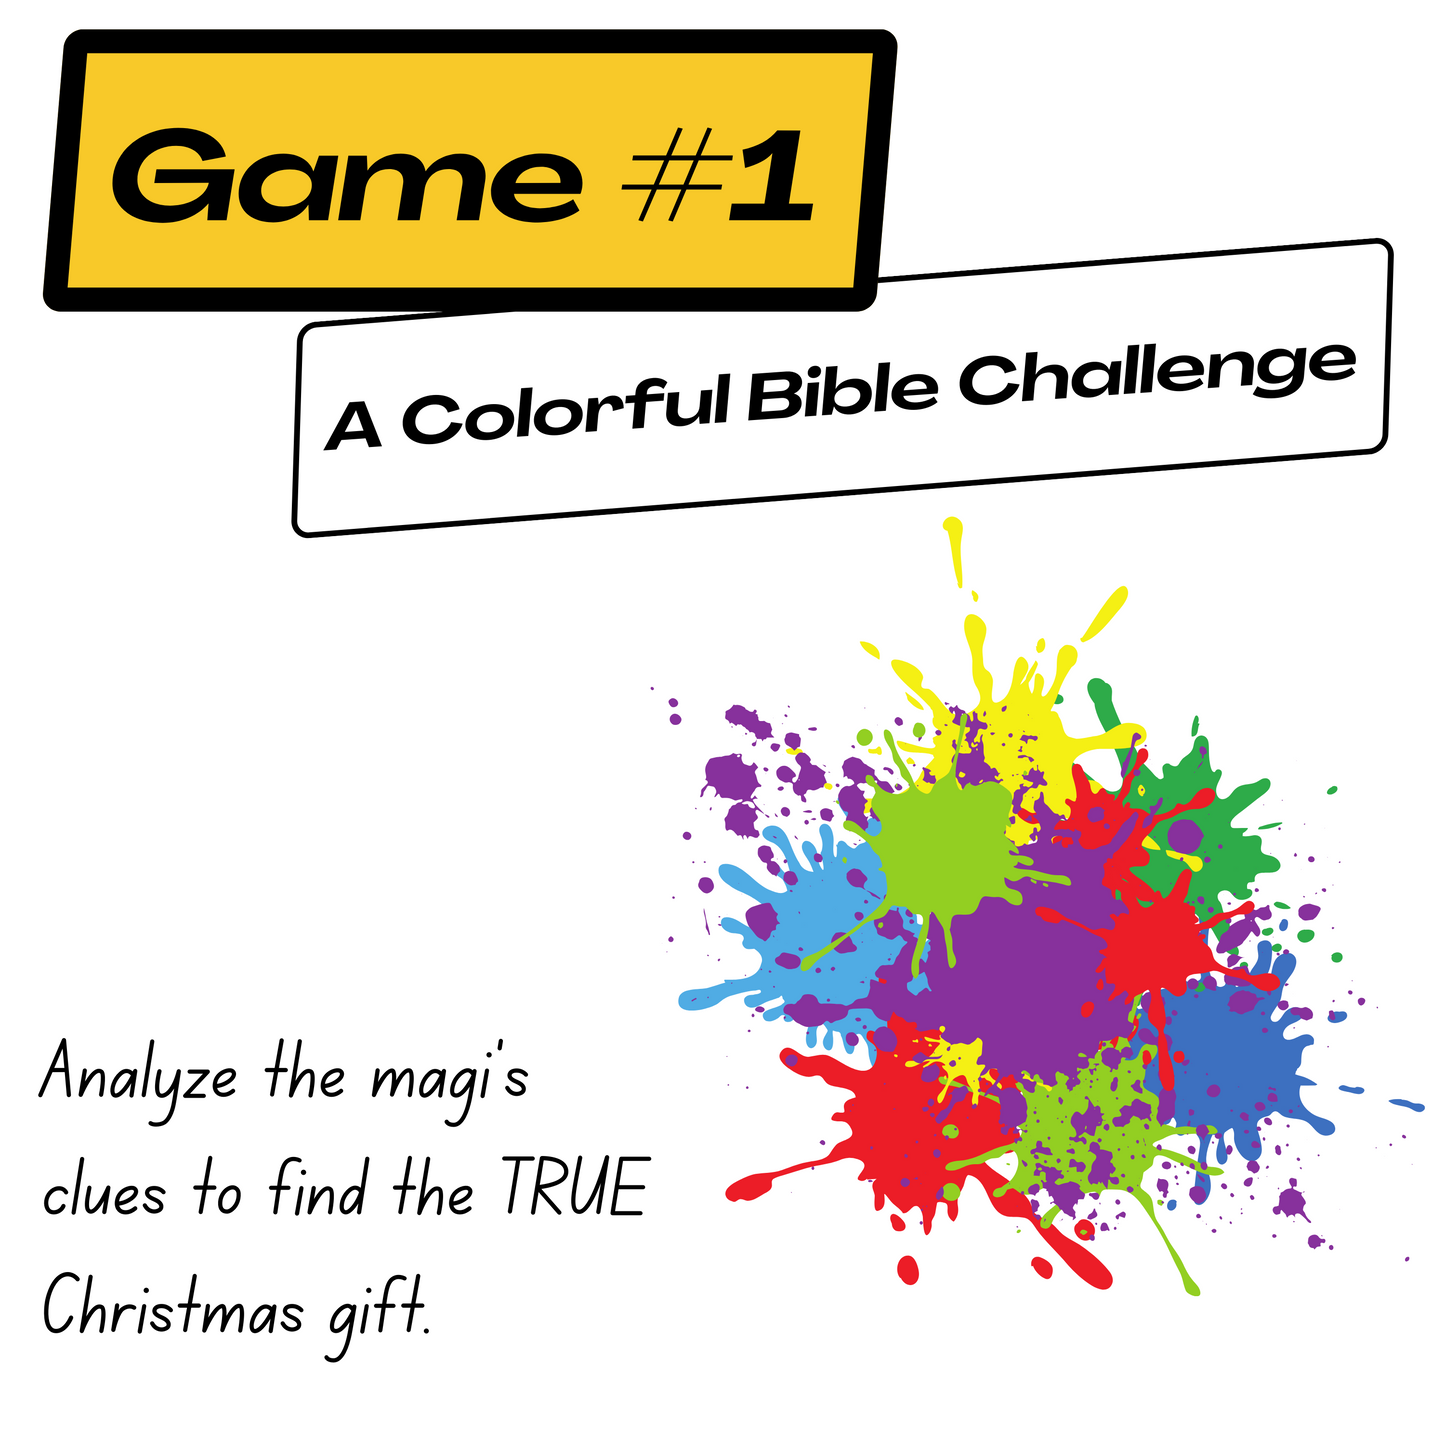 Quick Bible Quest: Genesis Bundle